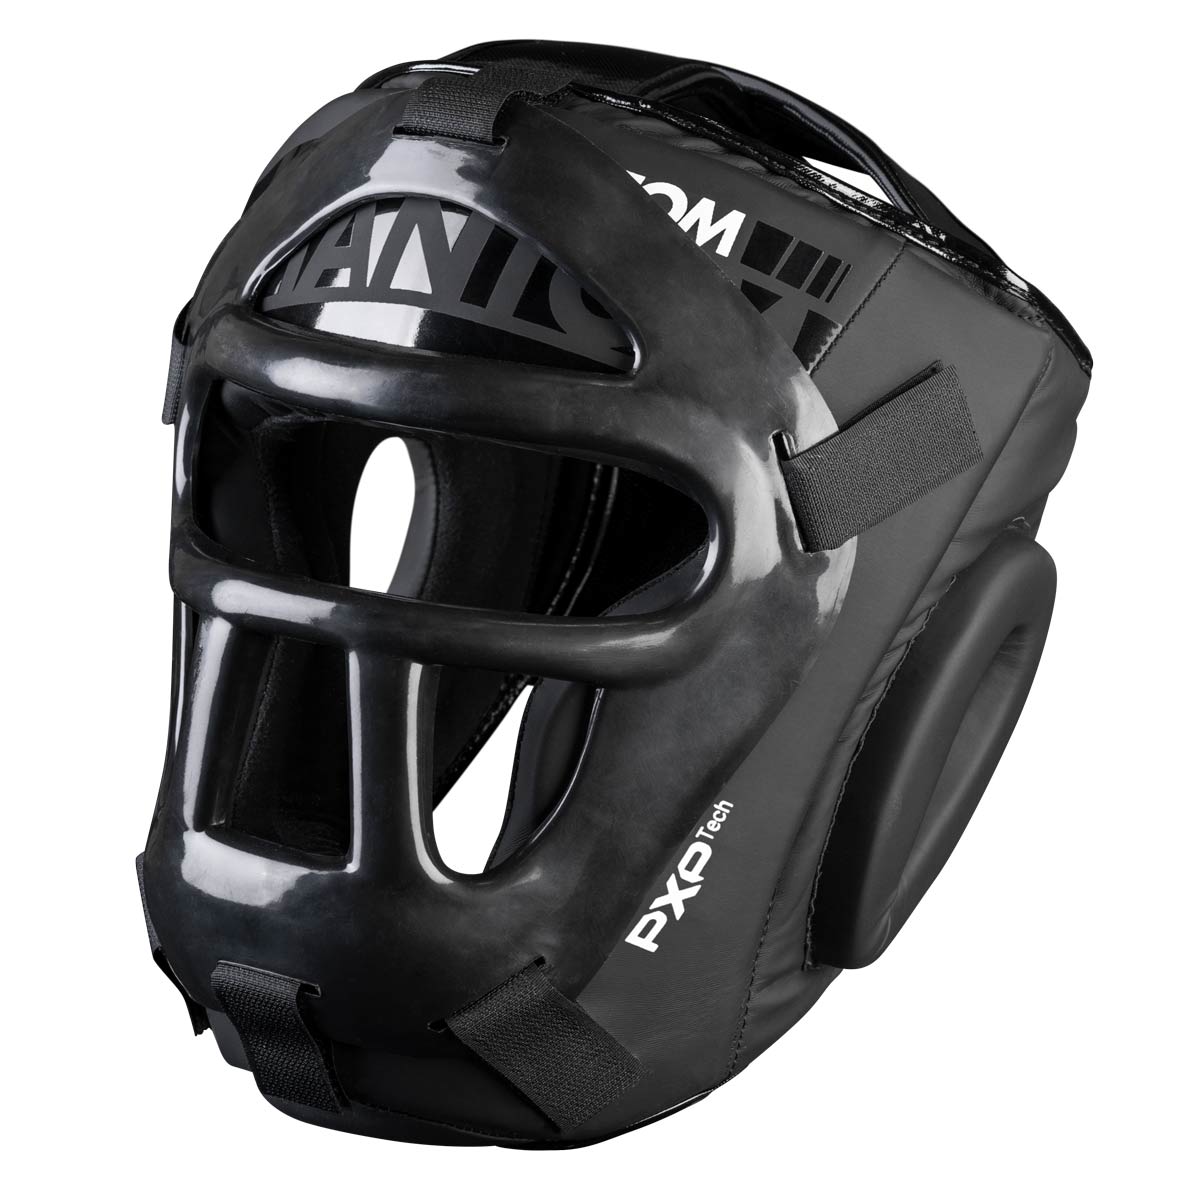 Der Phantom Apex Cage Kopfschutz für ultimativen Schutz im Sparring